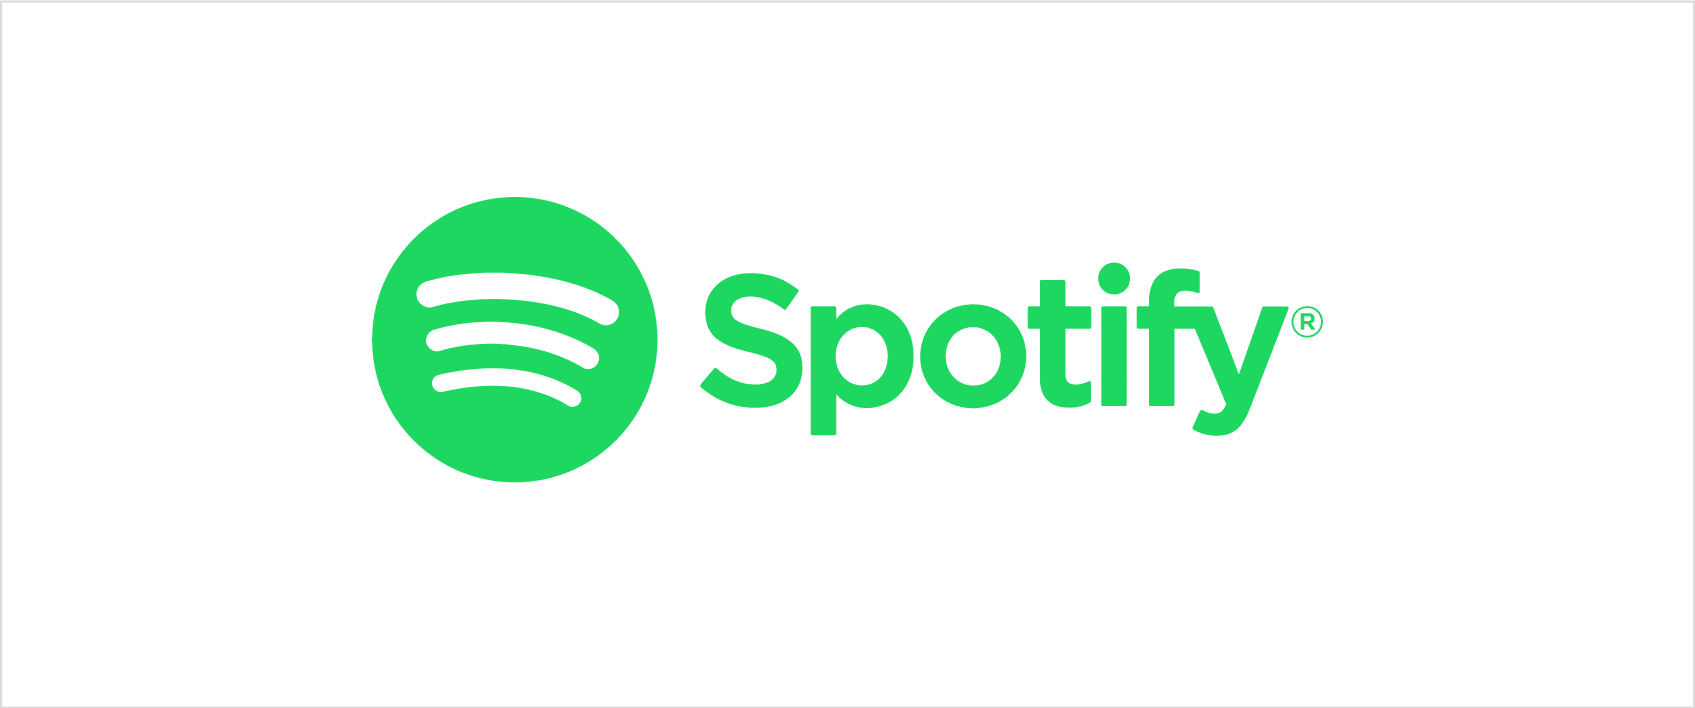 Les paroles de chansons en temps réel enfin disponibles sur Spotify